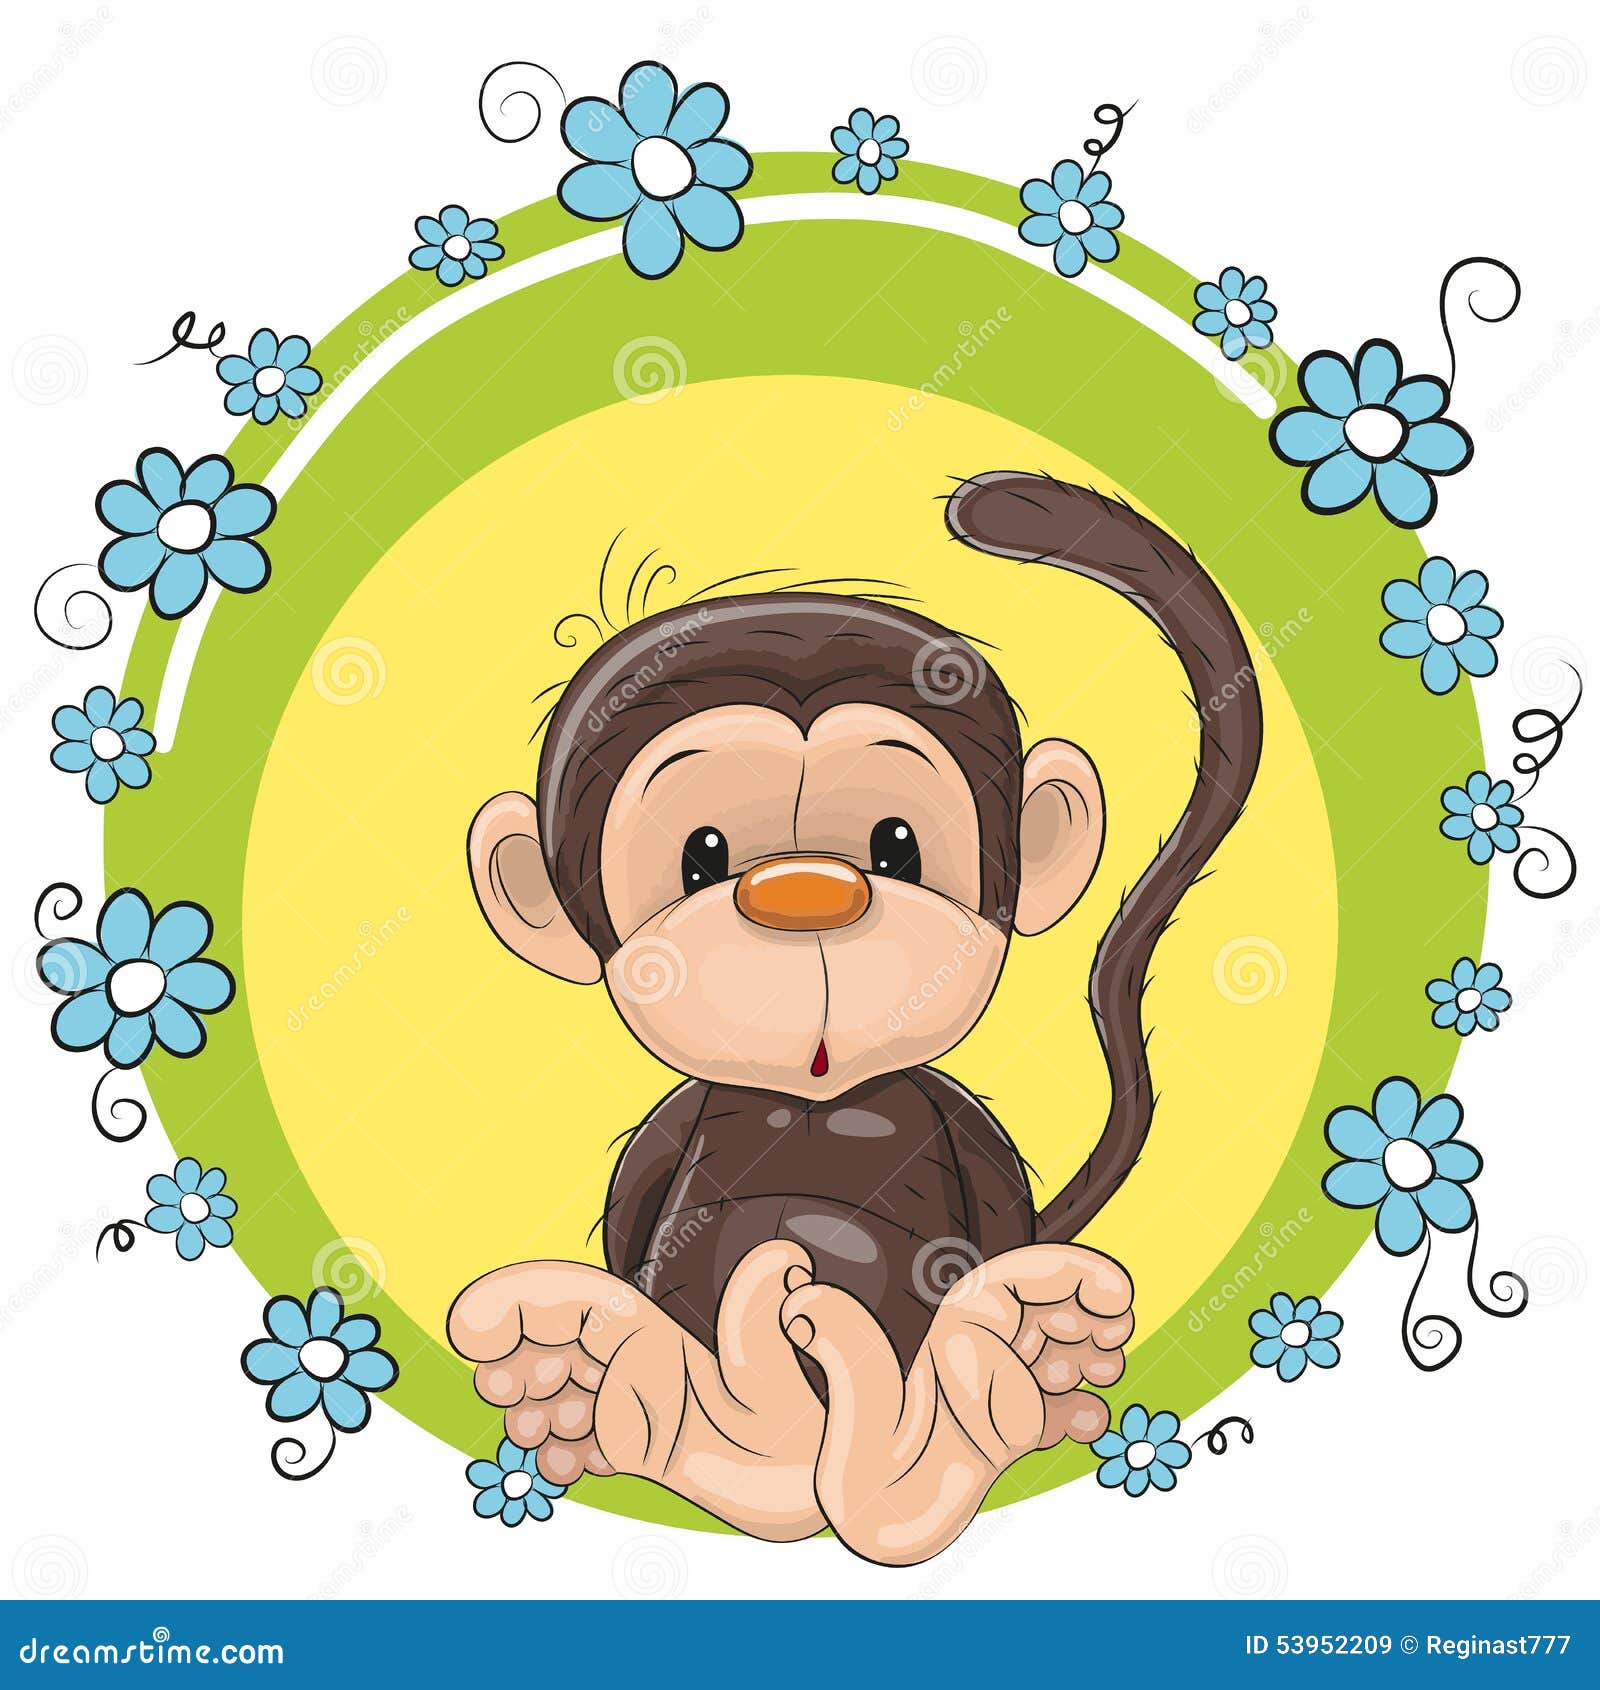 Круг обезьян. Обезьянка в кружочке. Обезьяна мультяшная. Открытки с изображением обезьяны. Цветы обезьянки.